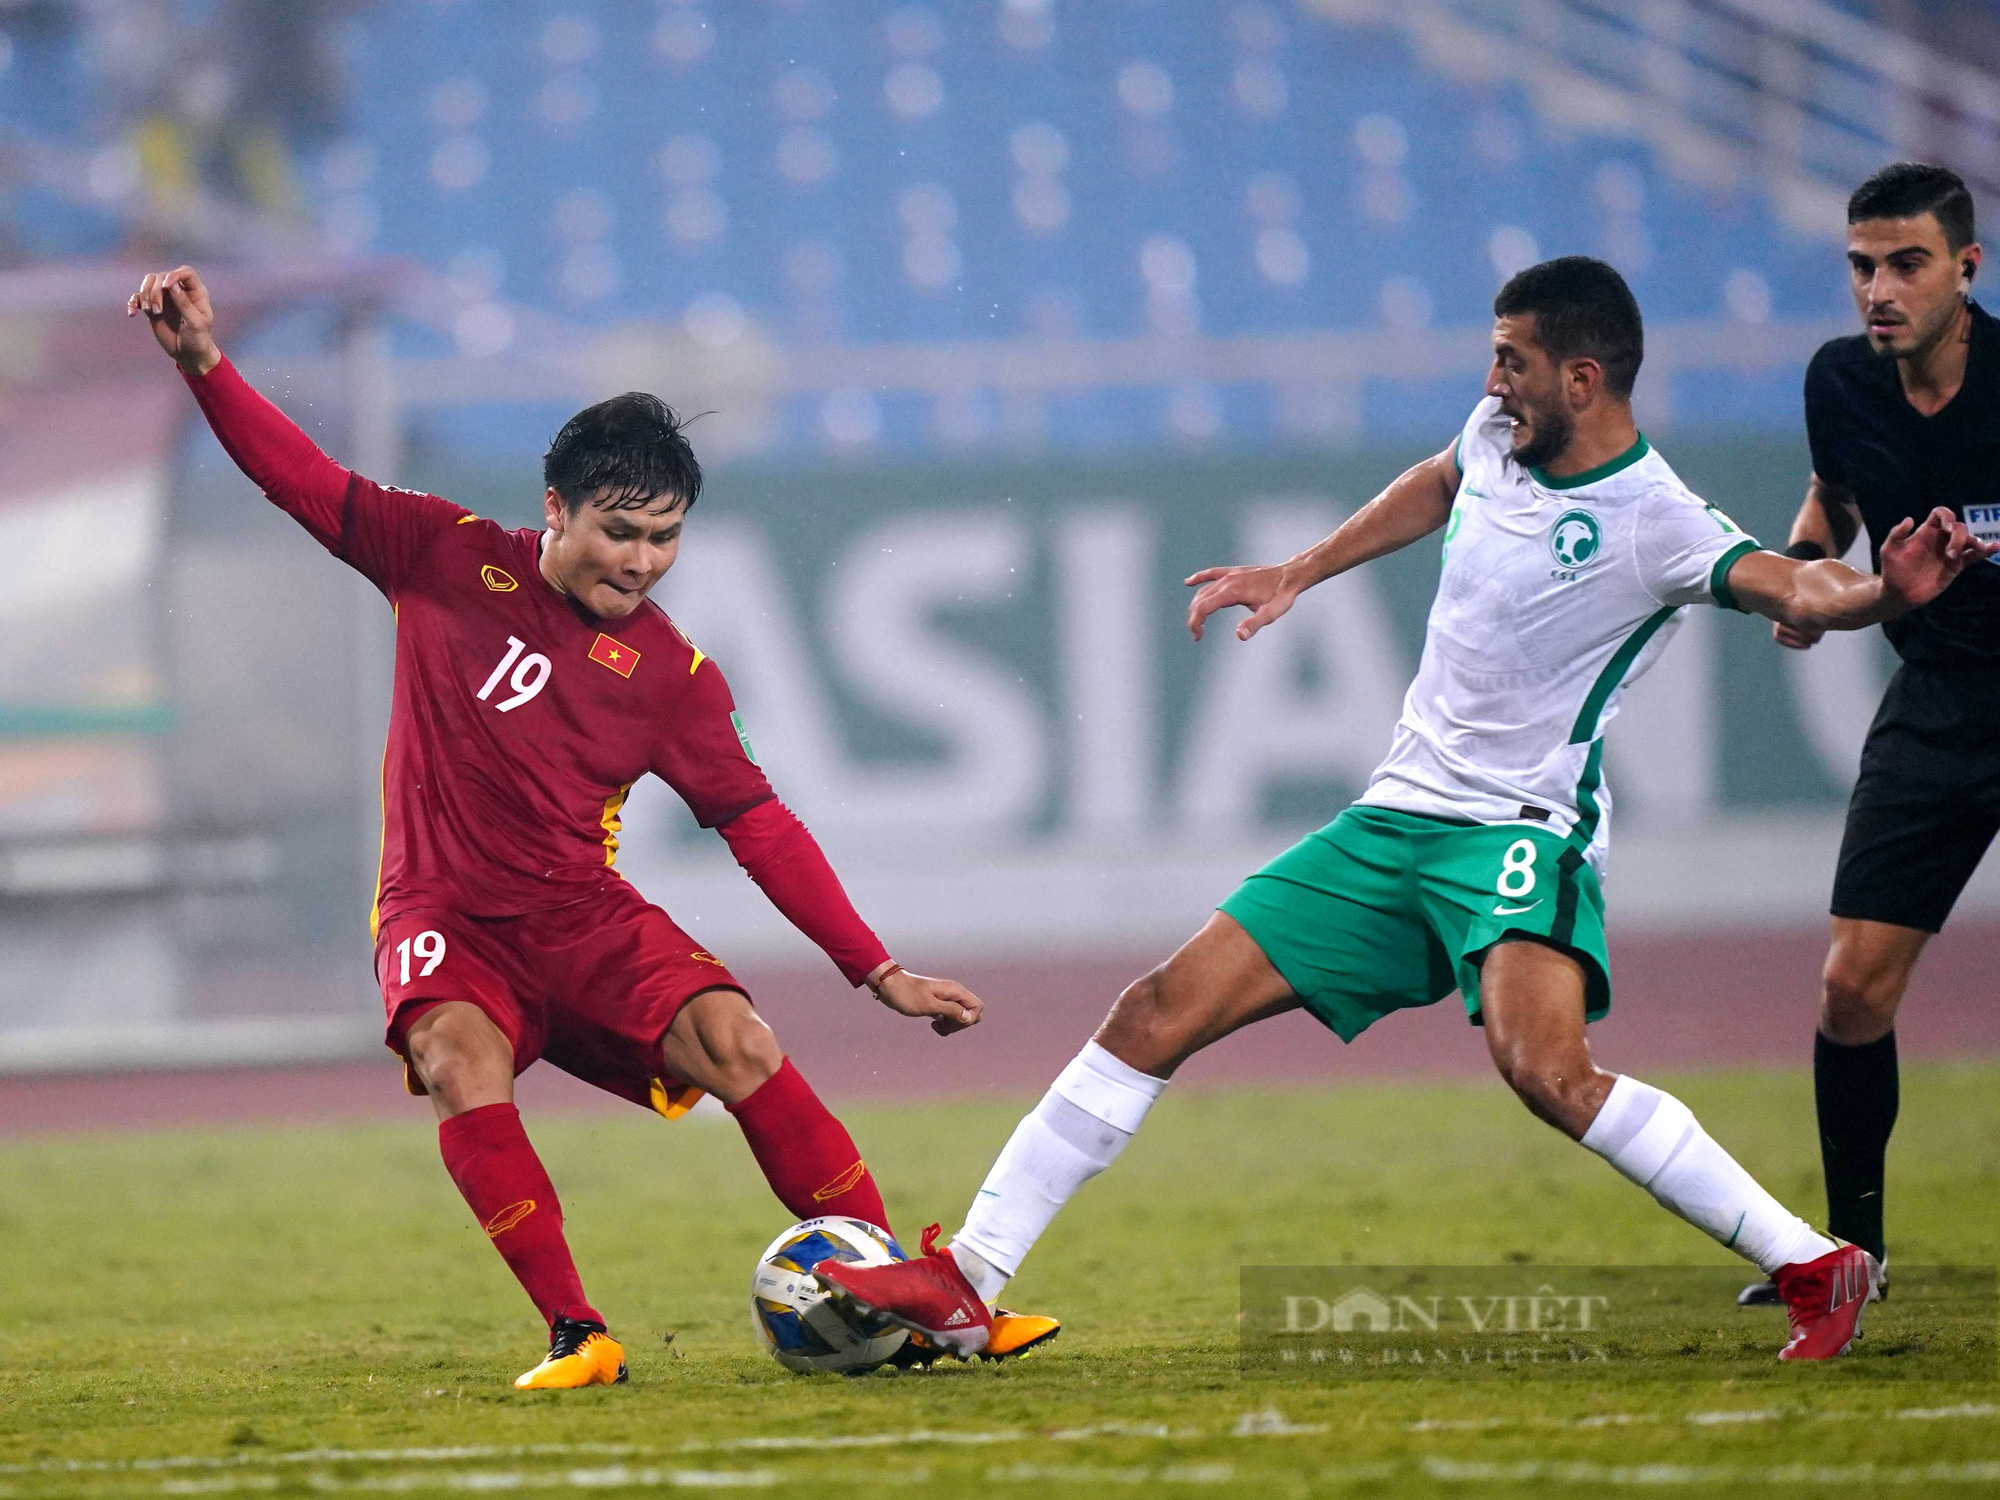 Chùm ảnh tuyển Việt Nam thi đấu lăn xả trước đội tuyển Ả Rập Xê Út - Ảnh 4.